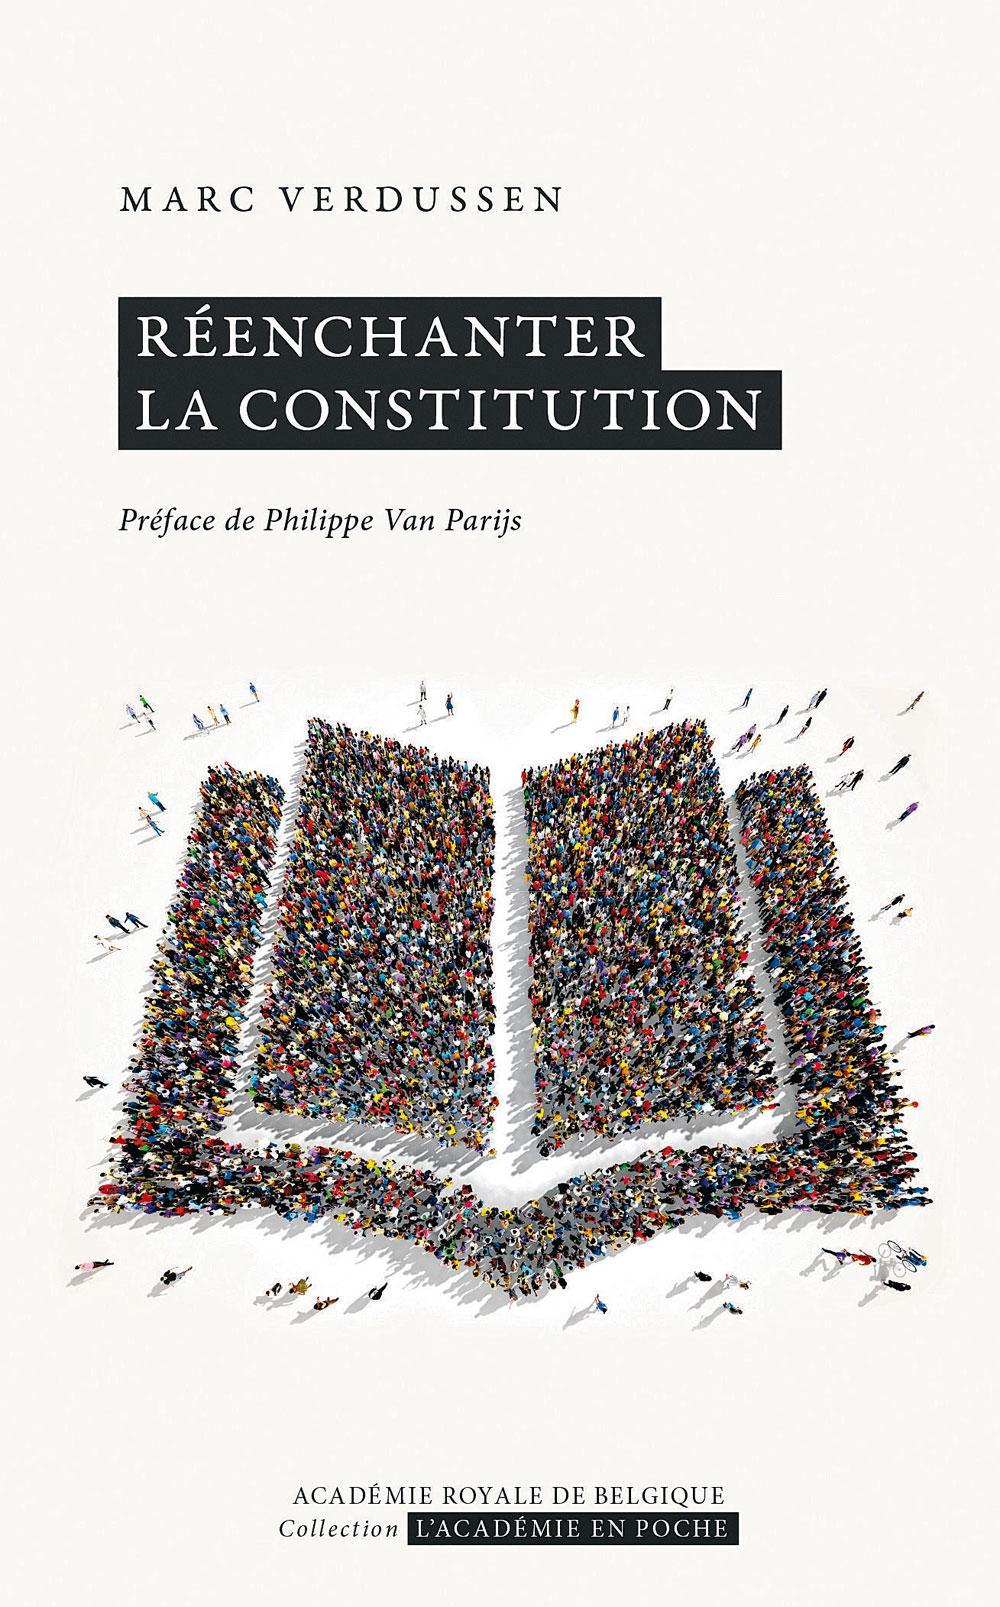 (1) Réenchanter la Constitution, par Marc Verdussen, Académie royale de Belgique, 131 p.